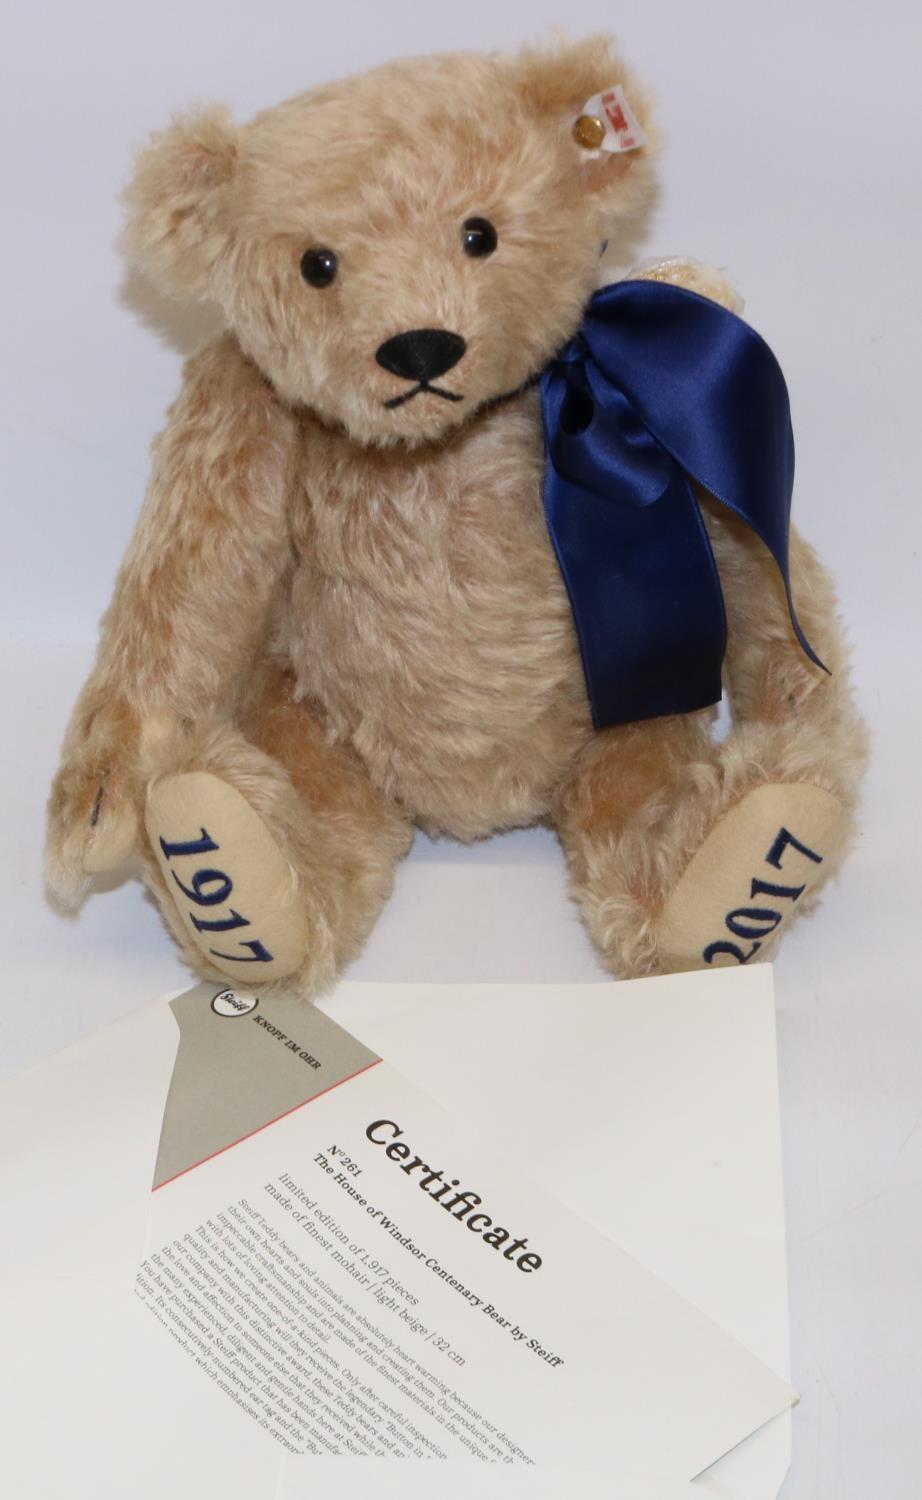 Steiff House of Windsor Centenary 1917-2017 teddy bear, with medallion on ribbon, with COA, H29cm